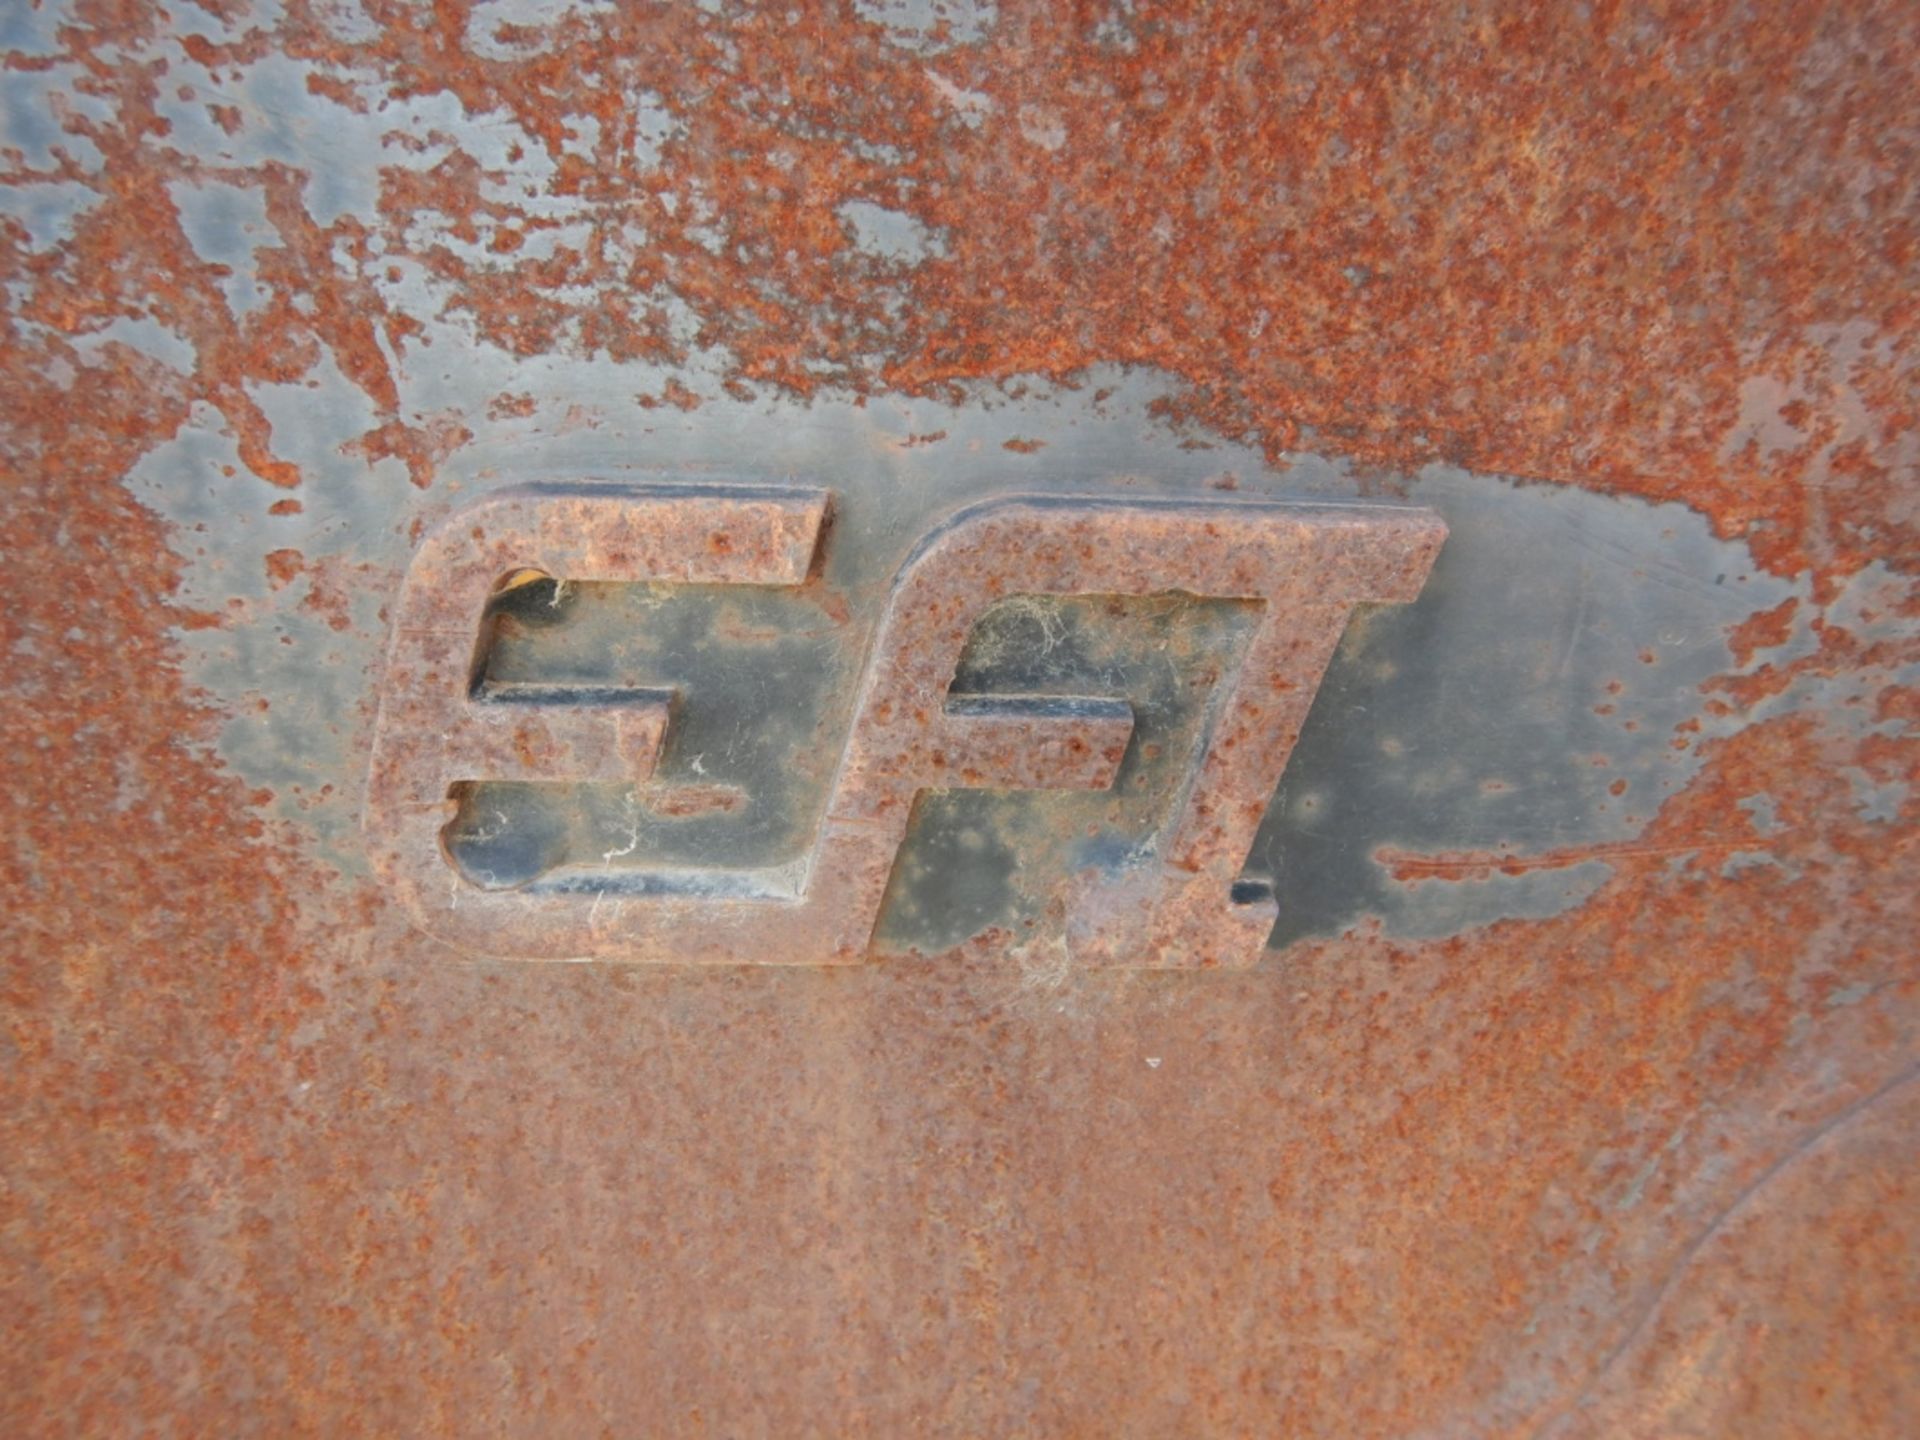 EFI SKID STEER TOOTH BUCKET - 78 INCH - Image 5 of 5